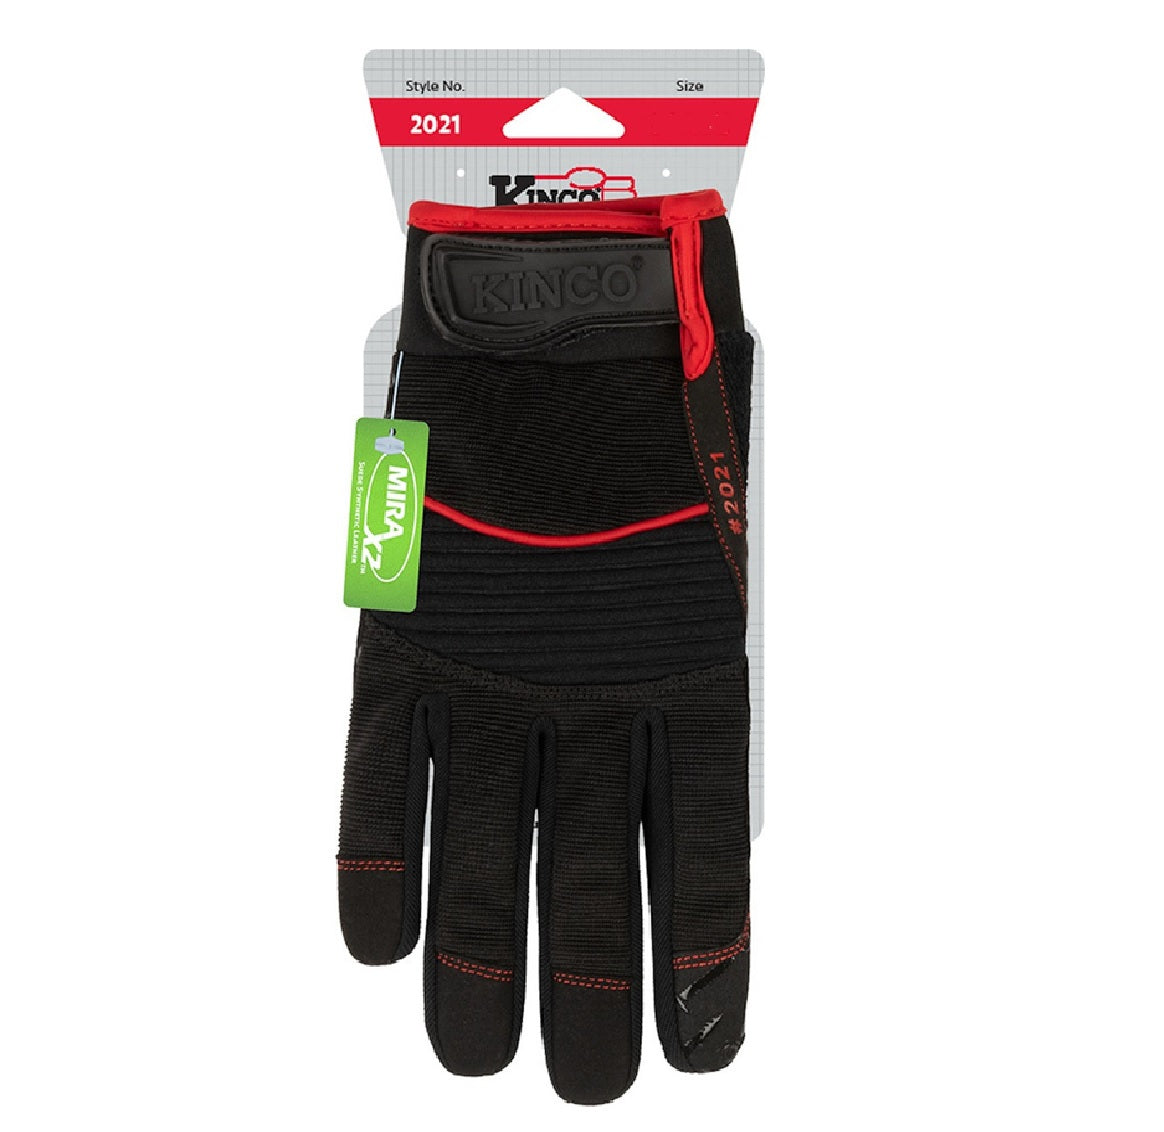 Kinco 2021-XL Handler Men's Hybrid Work Gloves, Black